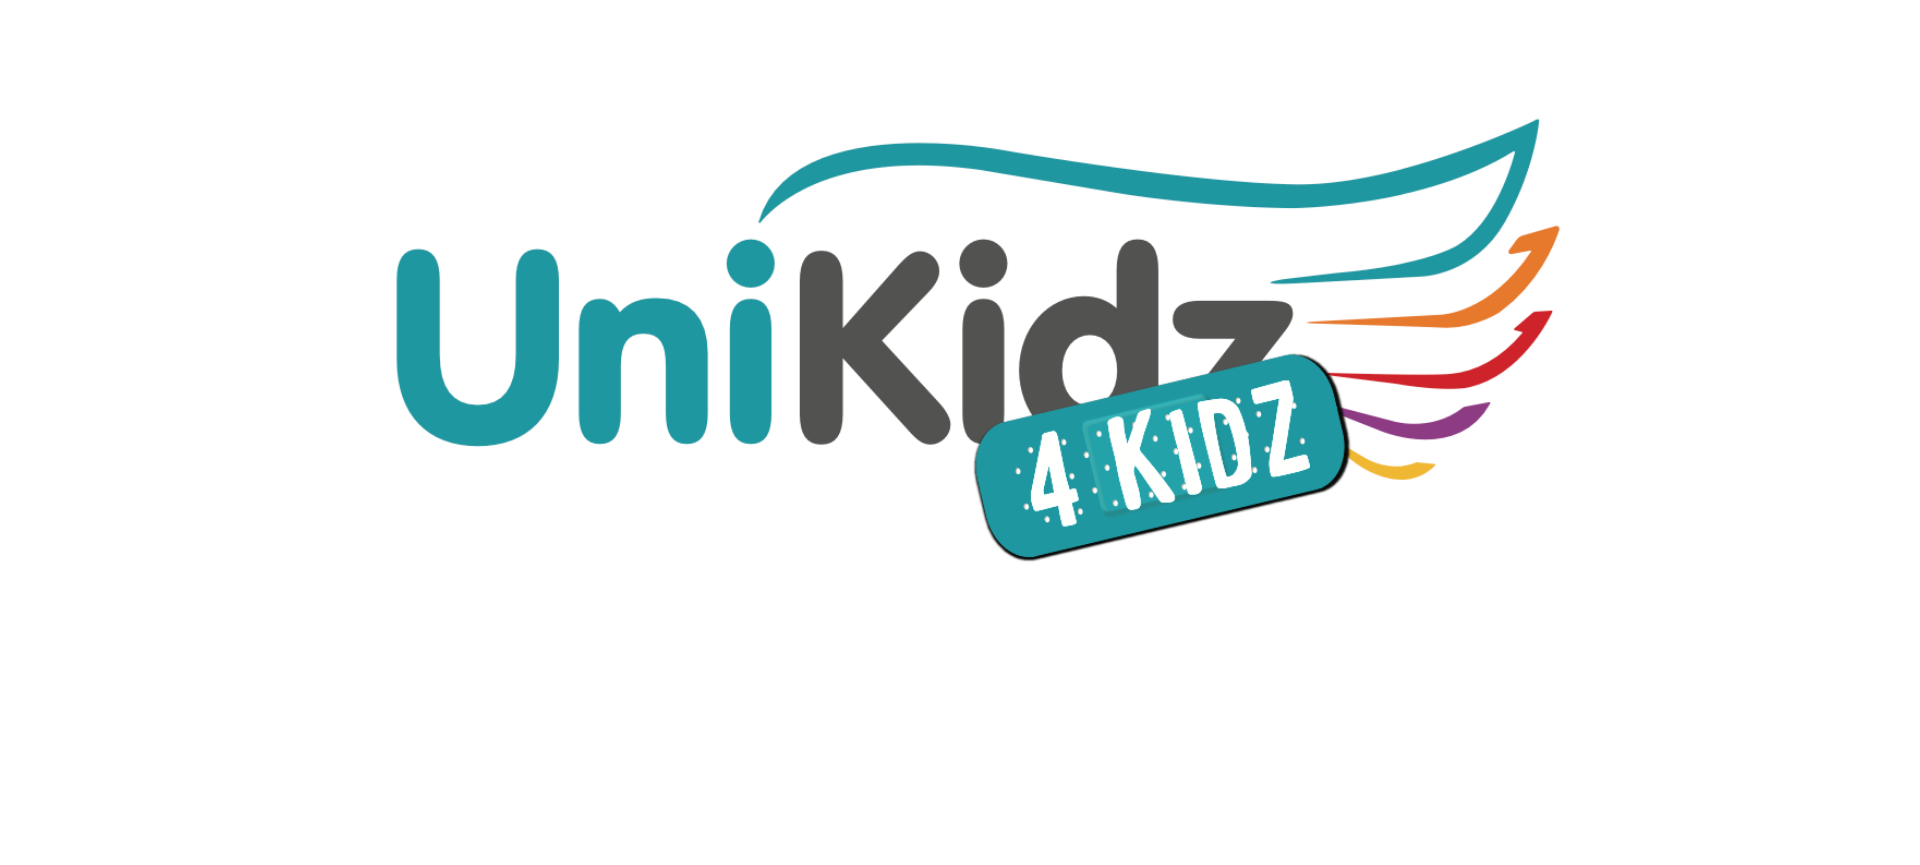 UniKidz 4 Kidz 